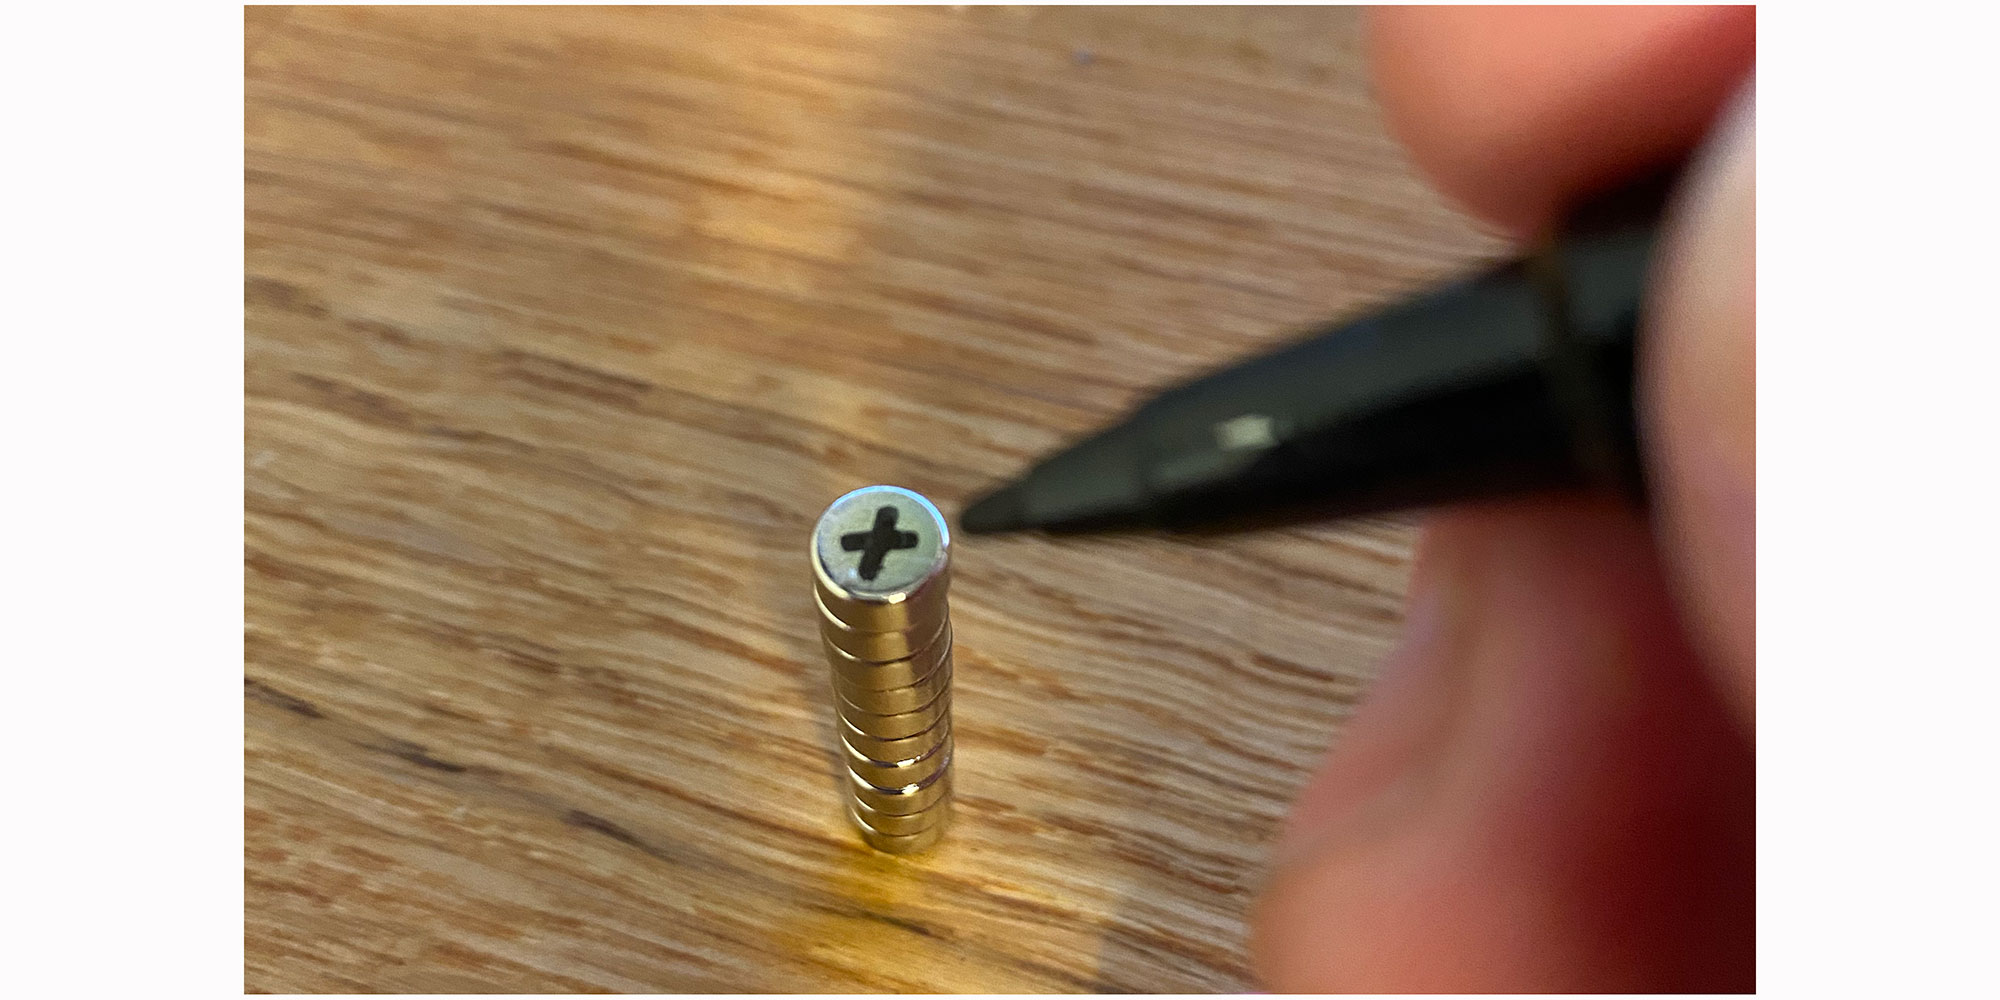 Det er nemt at markere polerne med en tusch - blot sæt en kryds i toppen af hver magnet